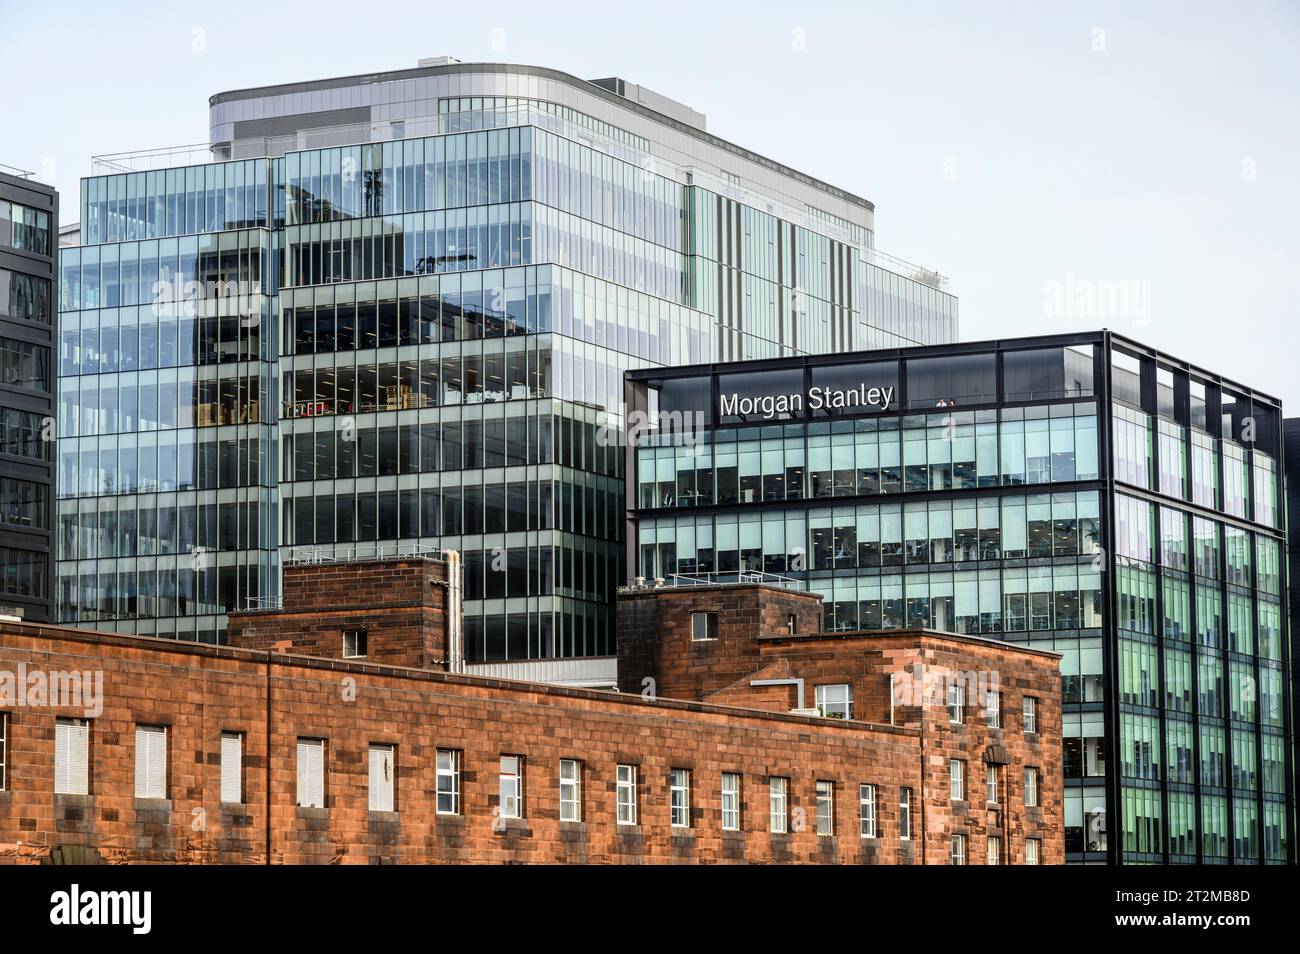 Immeuble de bureaux Morgan Stanley, Glasgow, Écosse, Royaume-Uni, Europe Banque D'Images